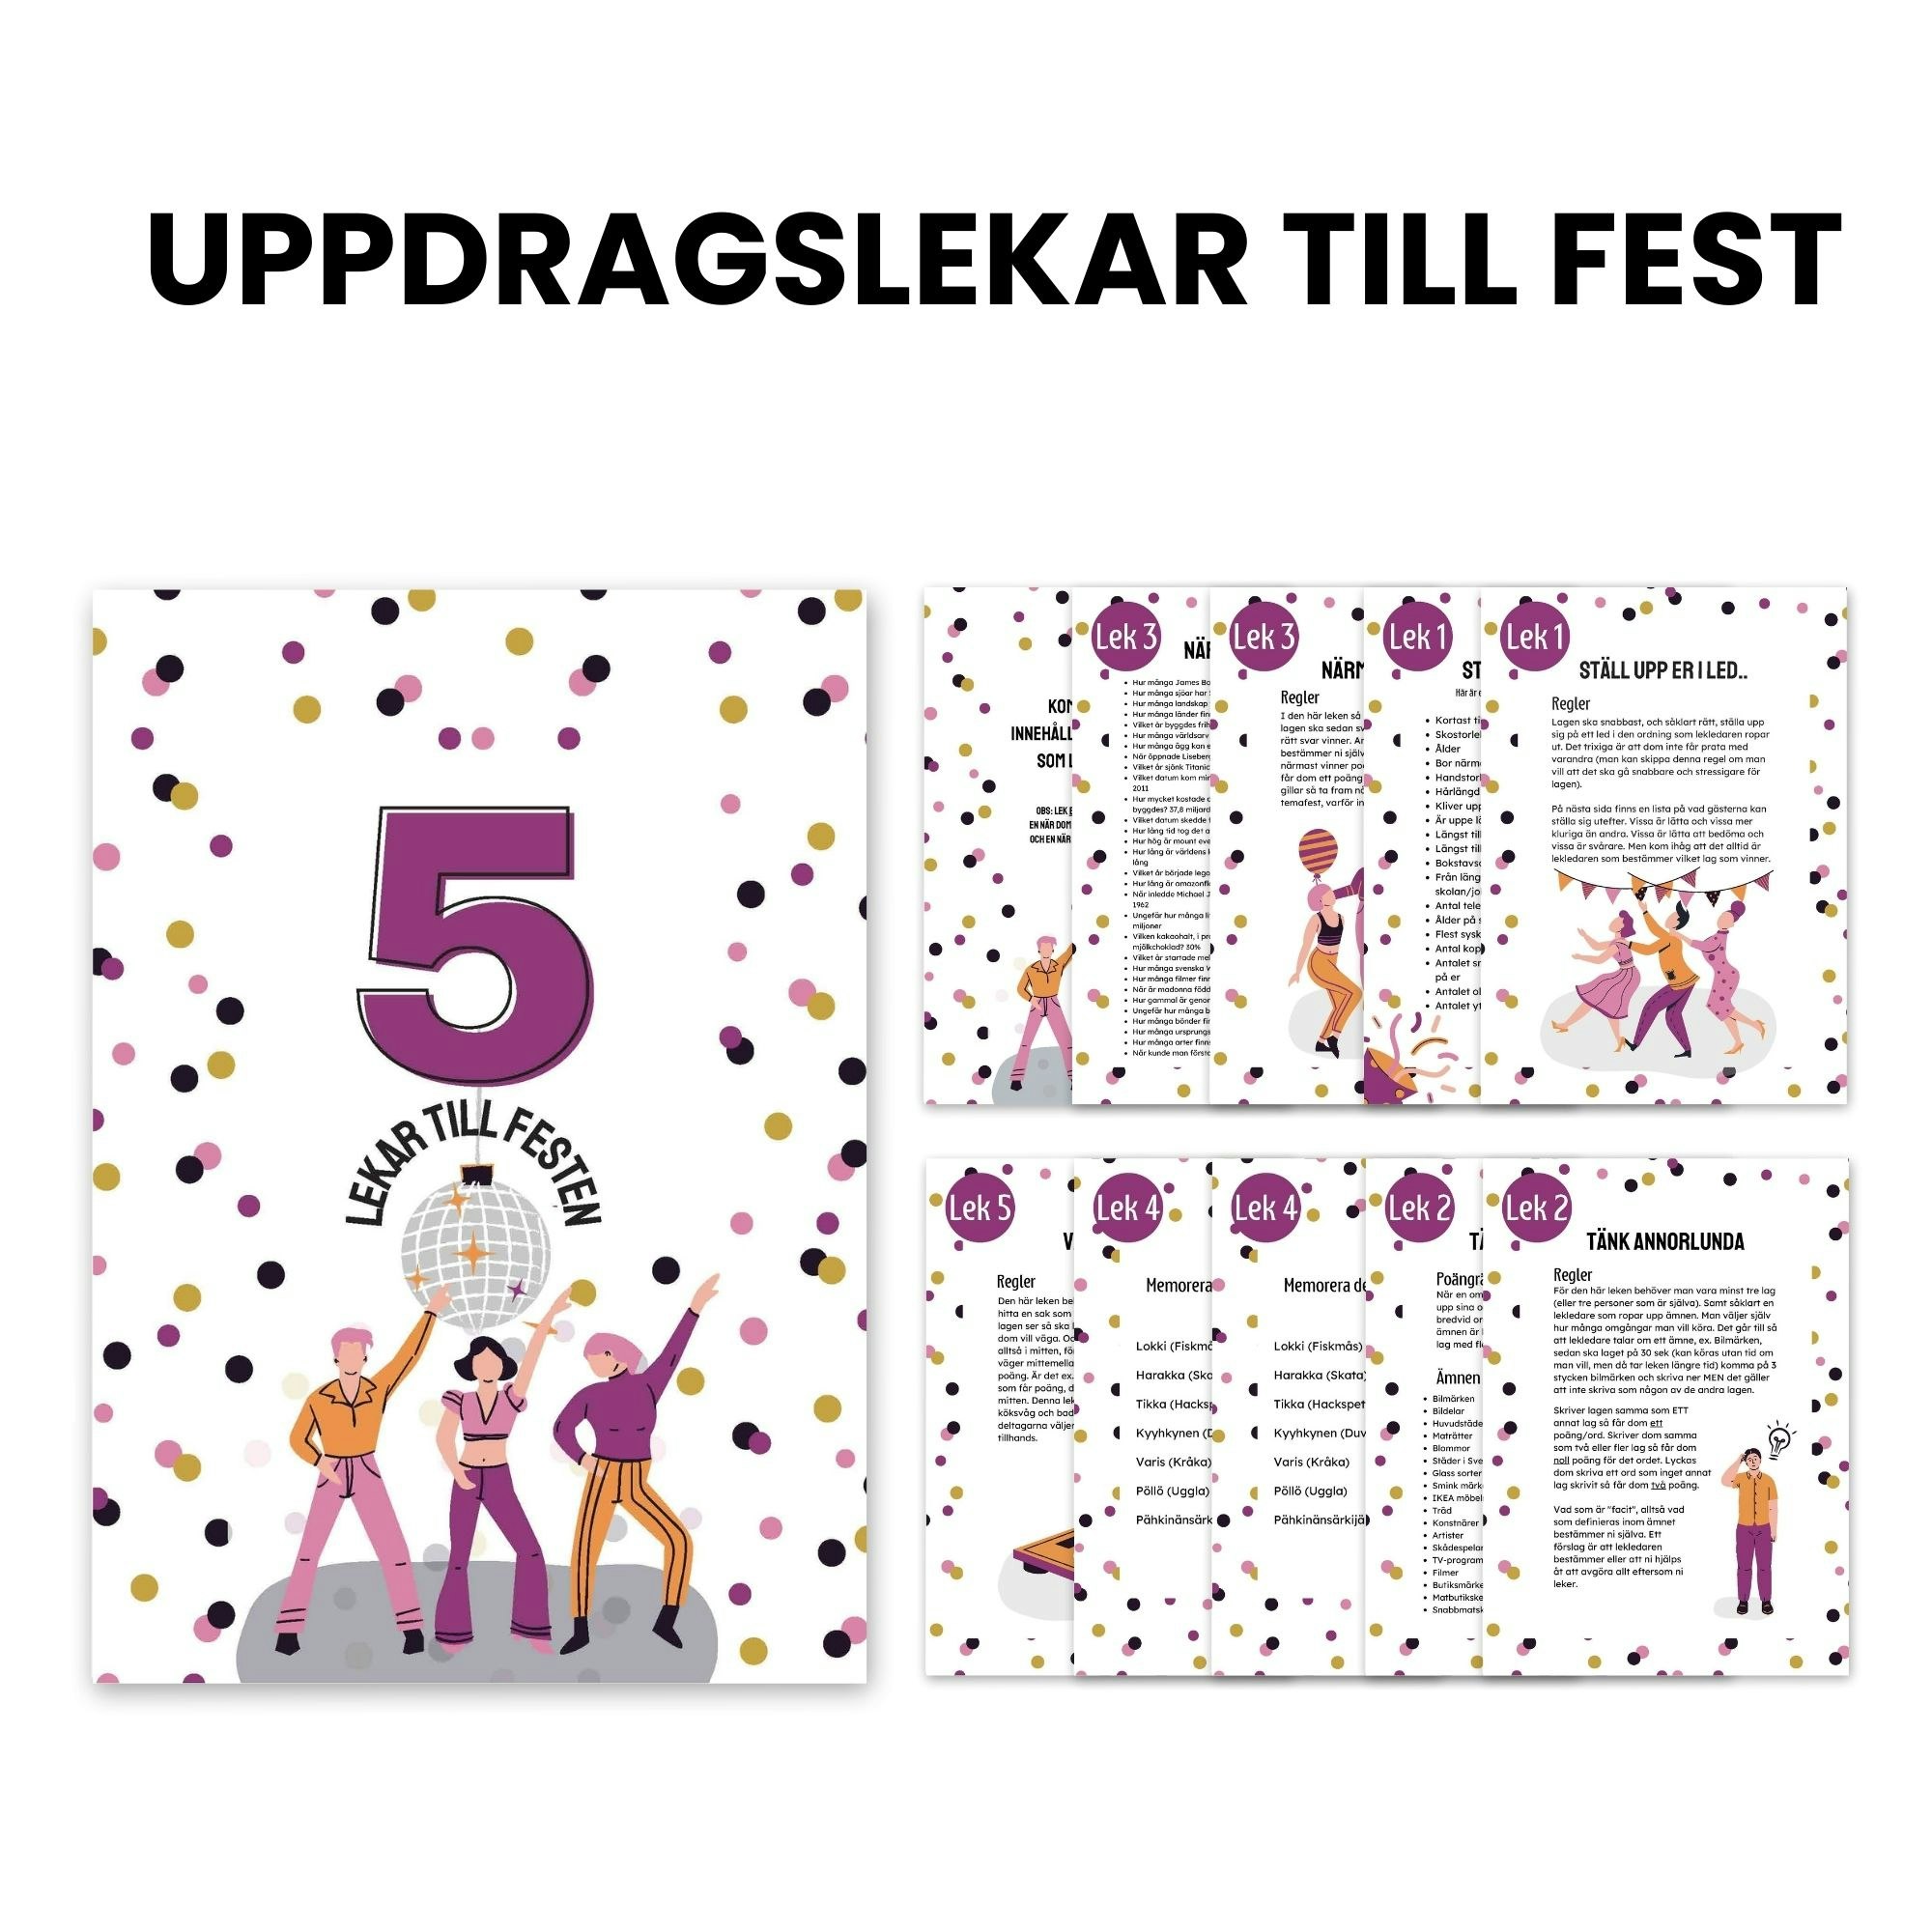 5 lekar till festen - Uppdragslekar - IM details - en del av  festligatips.com